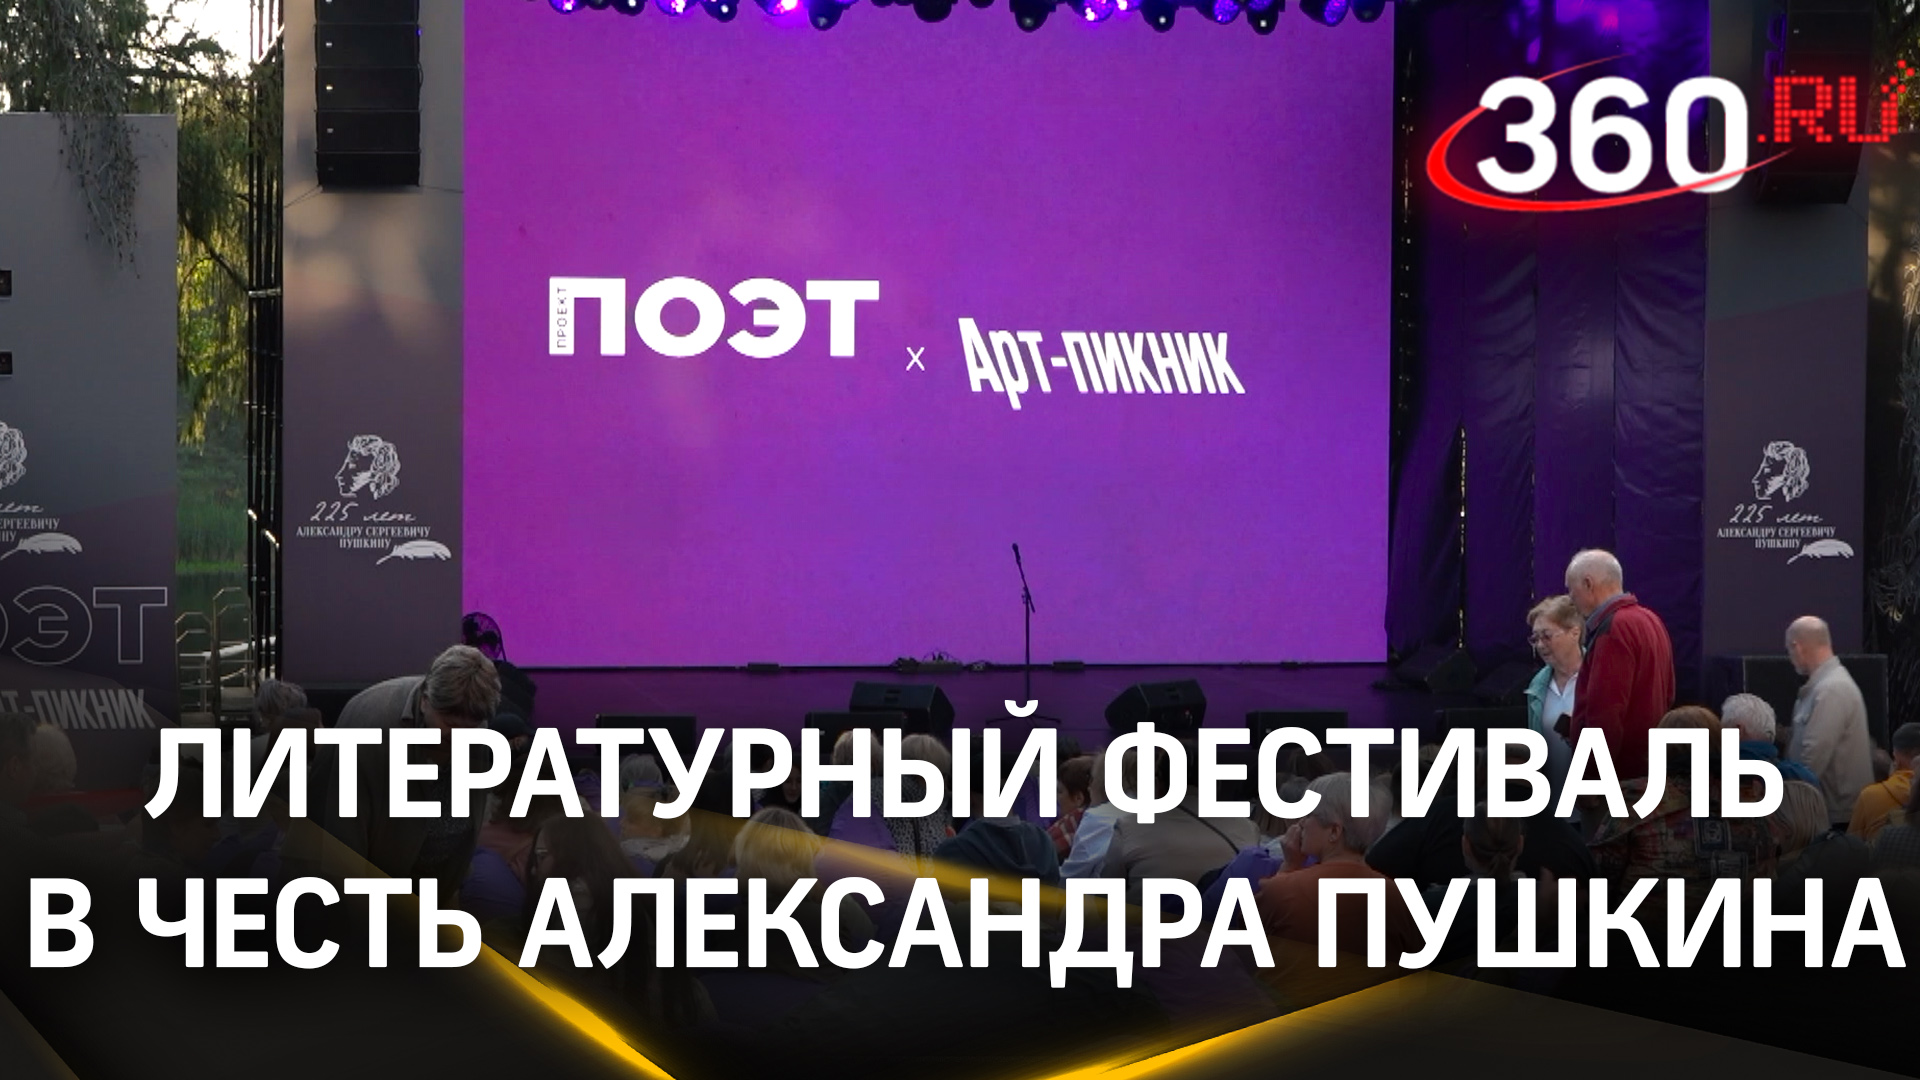 Масштабный фестиваль, посвященный Александру Пушкину, проходит в Подмосковье